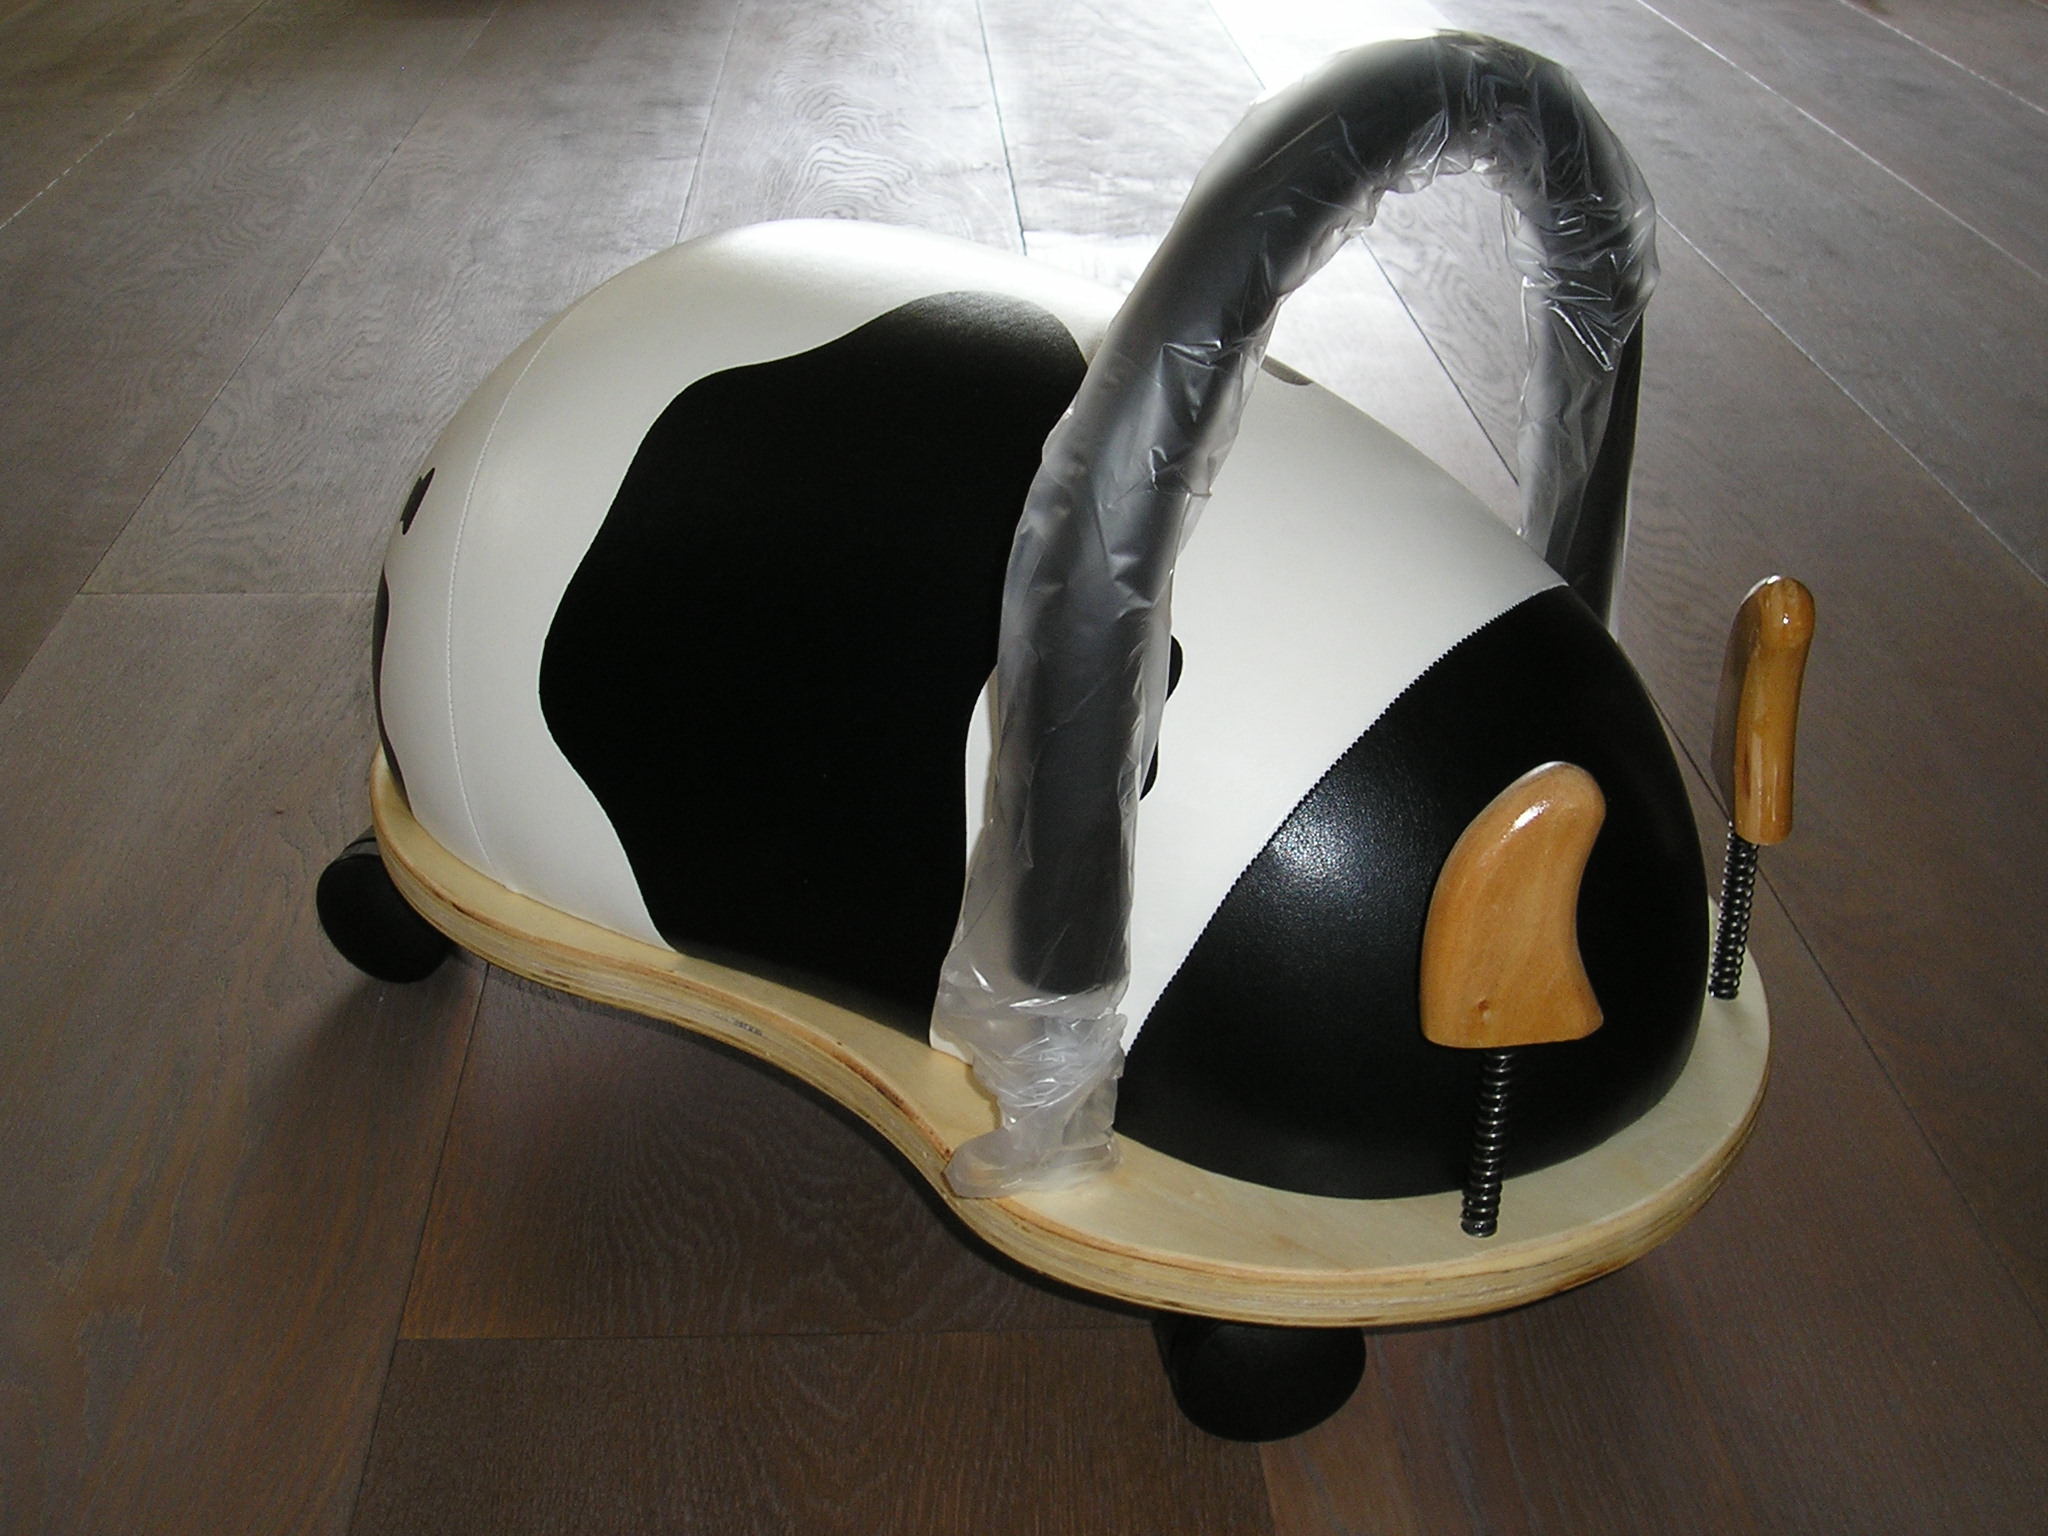 Wheelybug model KOE